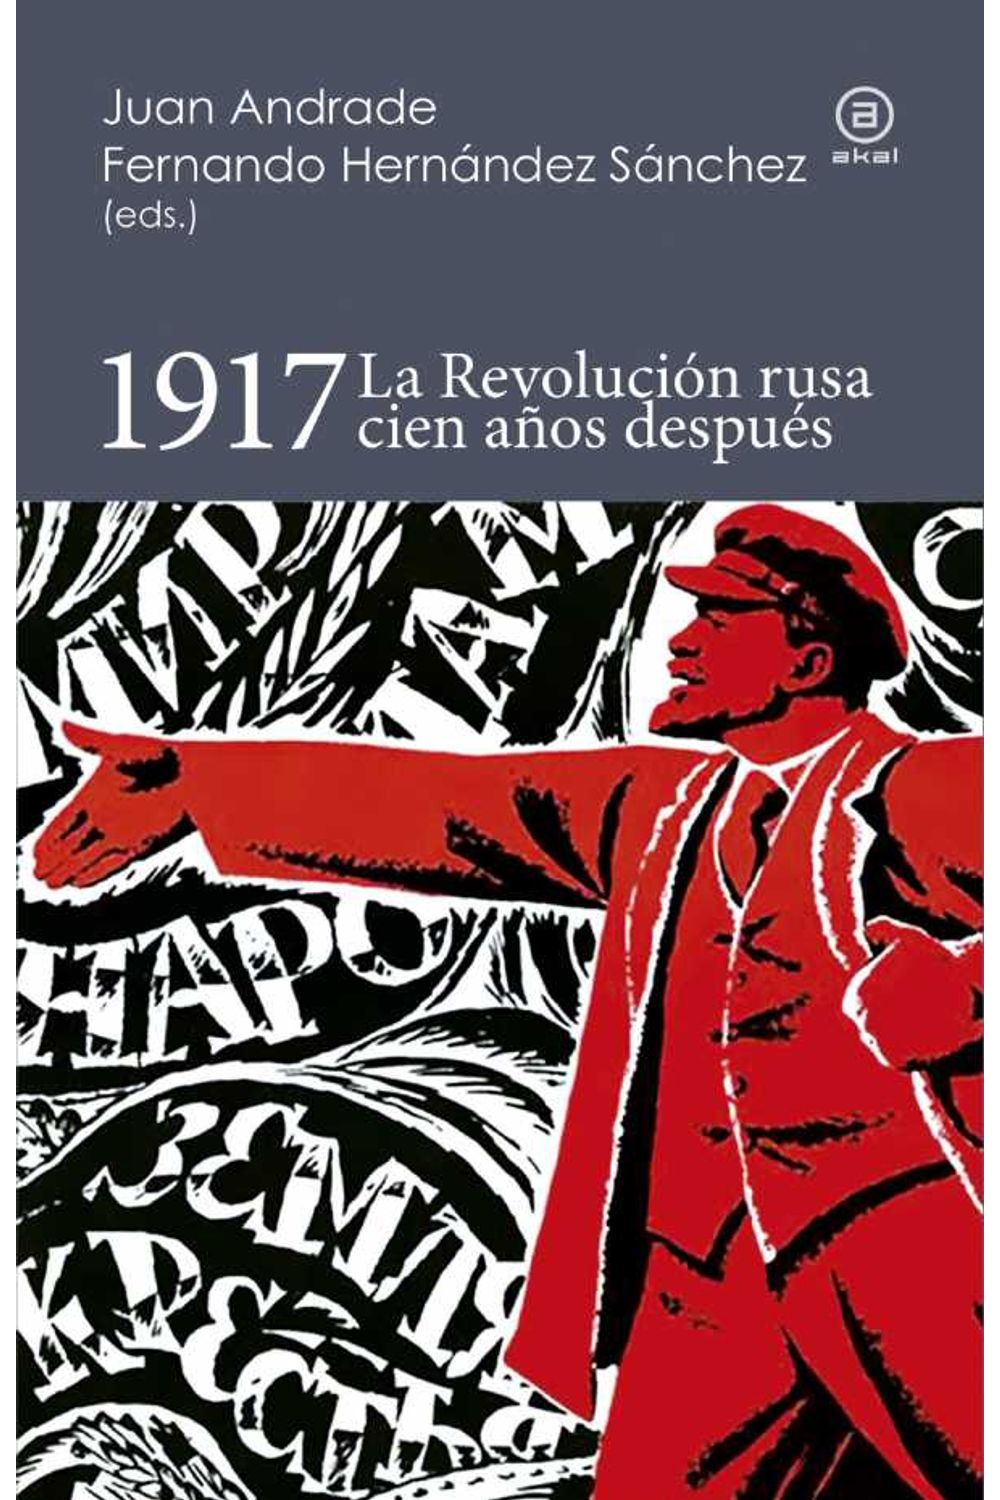 bw-1917-la-revolucioacuten-rusa-cien-antildeos-despueacutes-ediciones-akal-9788446044833